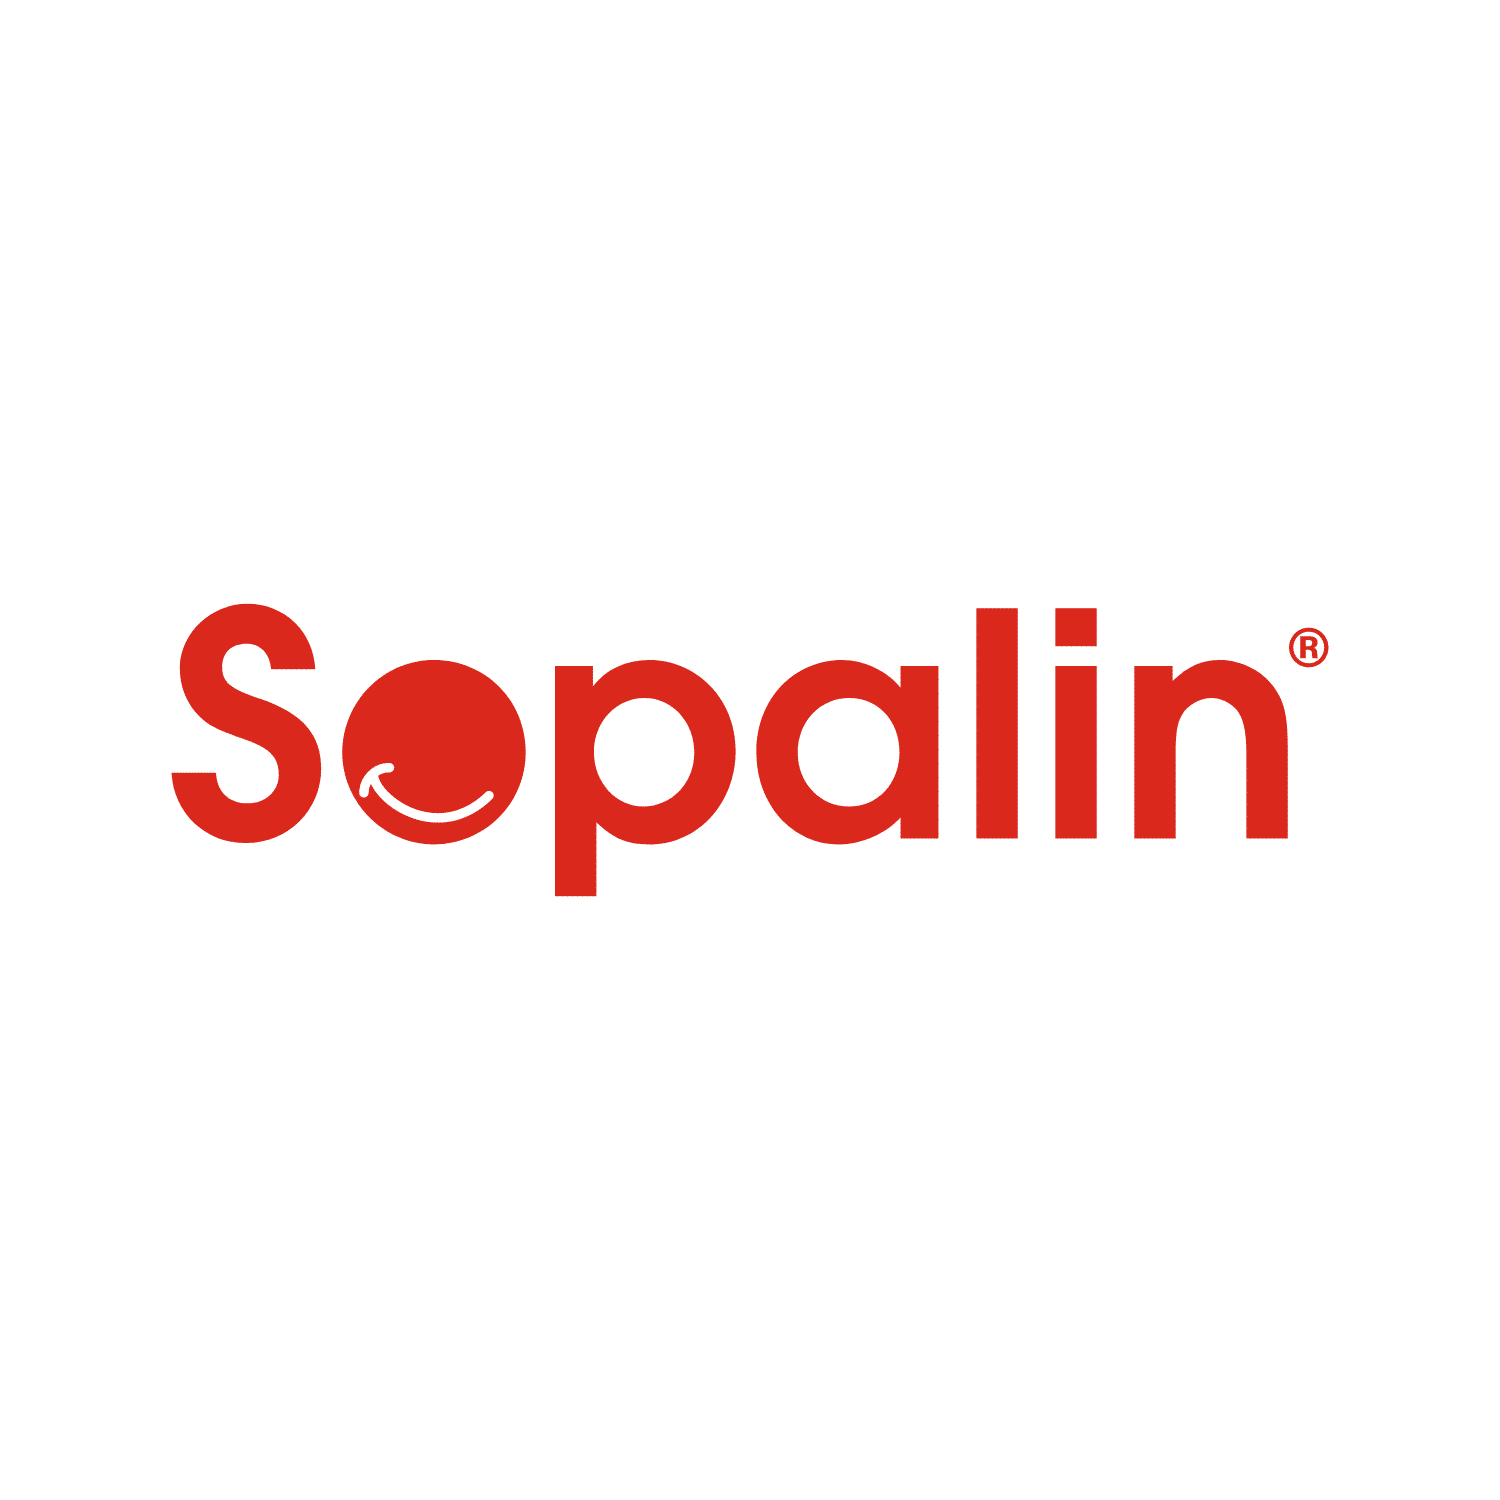 Sopalin® - Le plus mythique des rouleaux d'essuie-tout !